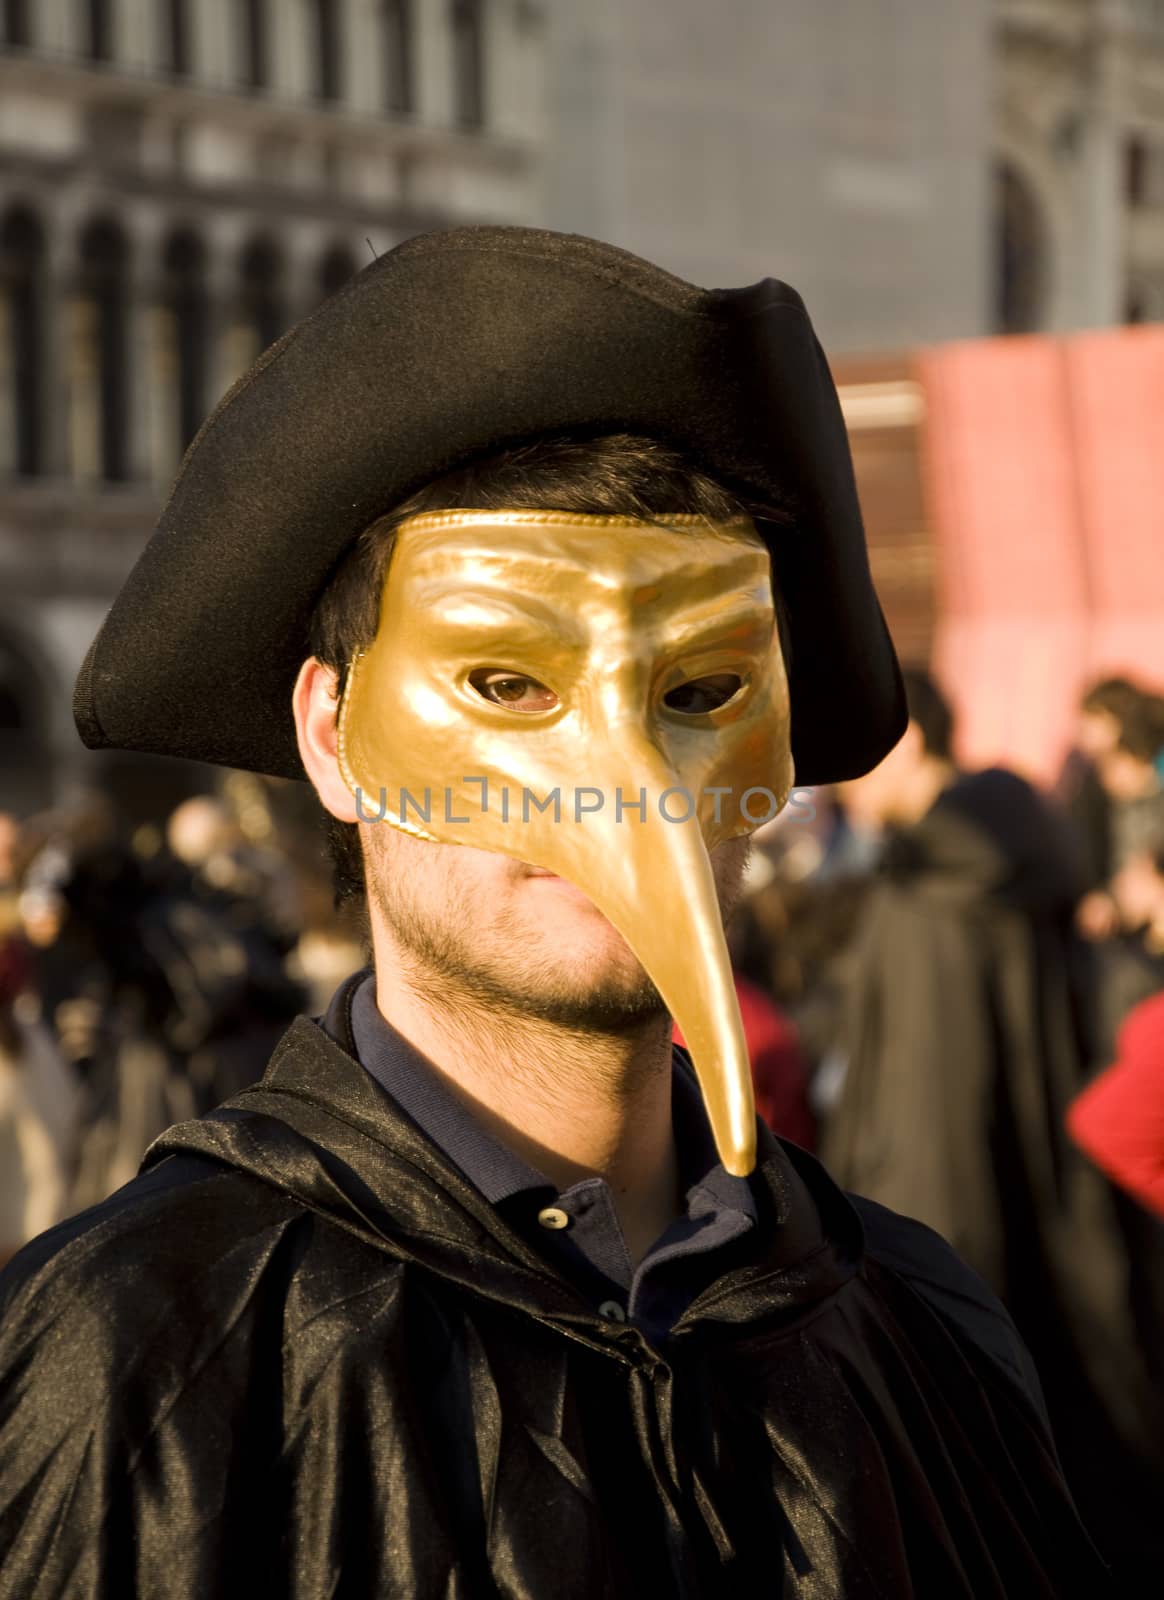 Venice Carnival Celebration Event in Saint Mark Square  by jelen80